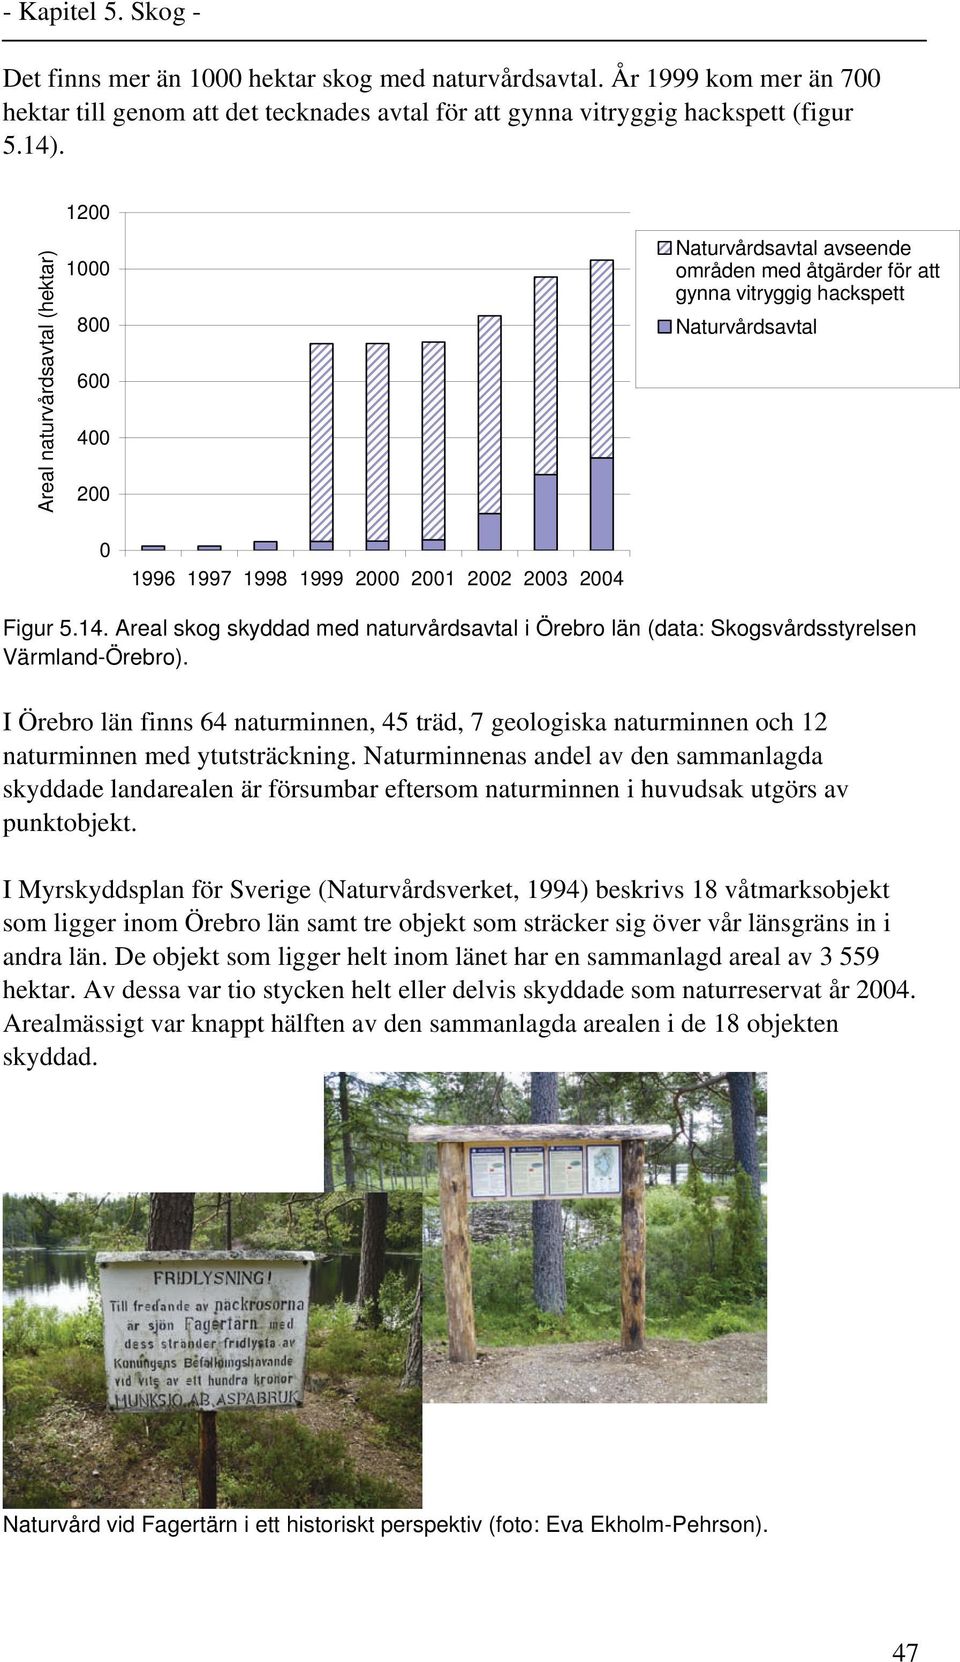 Figur 5.14. Areal skog skyddad med naturvårdsavtal i Örebro län (data: Skogsvårdsstyrelsen Värmland-Örebro).